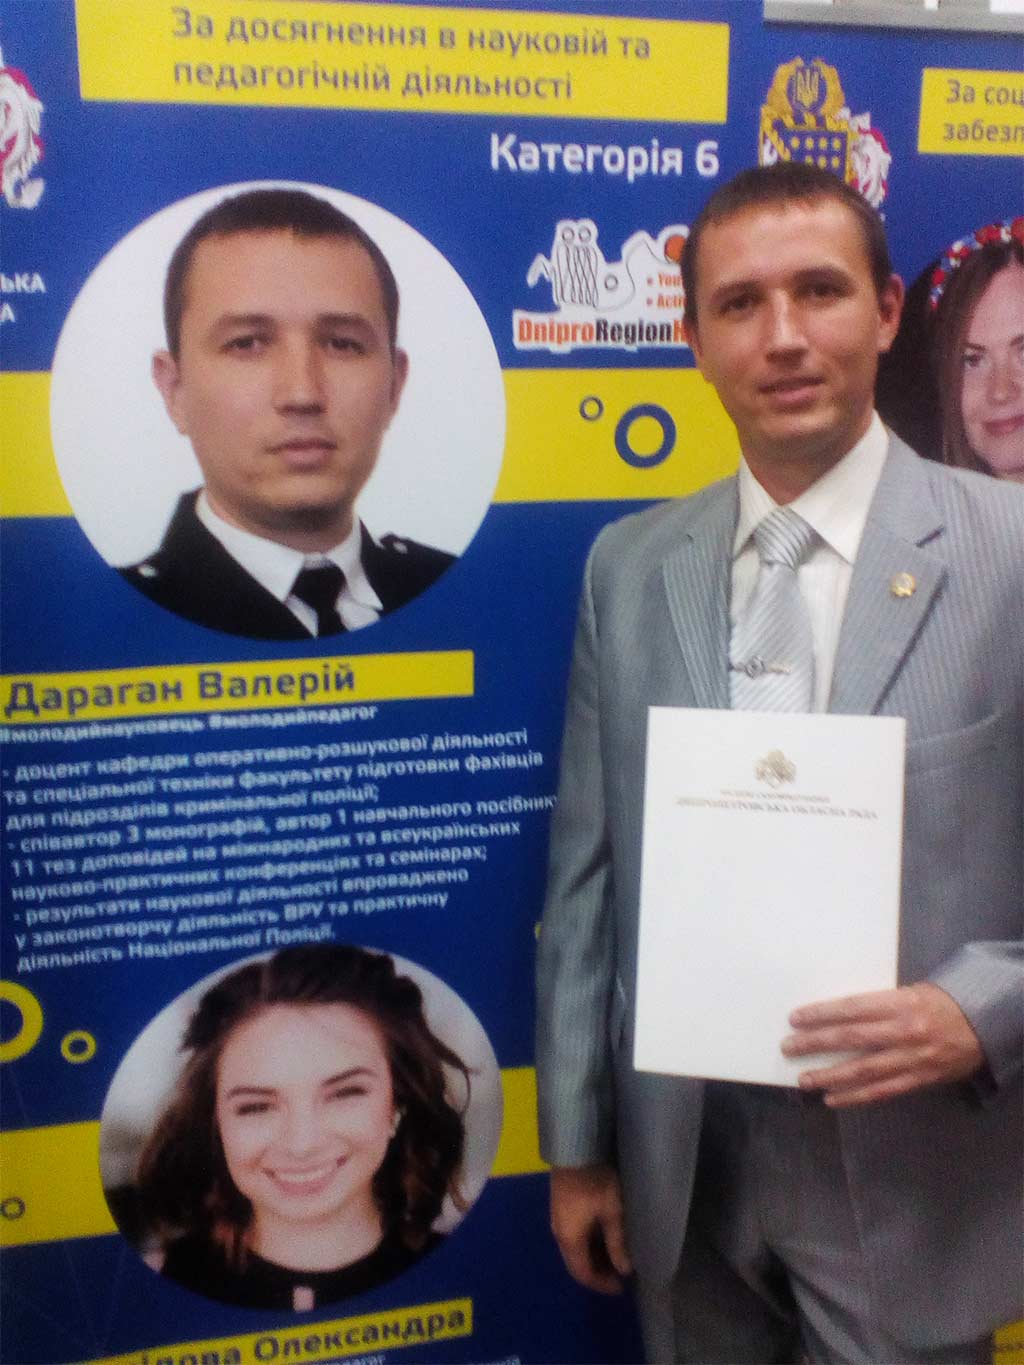 За досягнення в науковій та педагогічній діяльності викладач ДДУВС отримав премію Дніпропетровської обласної ради